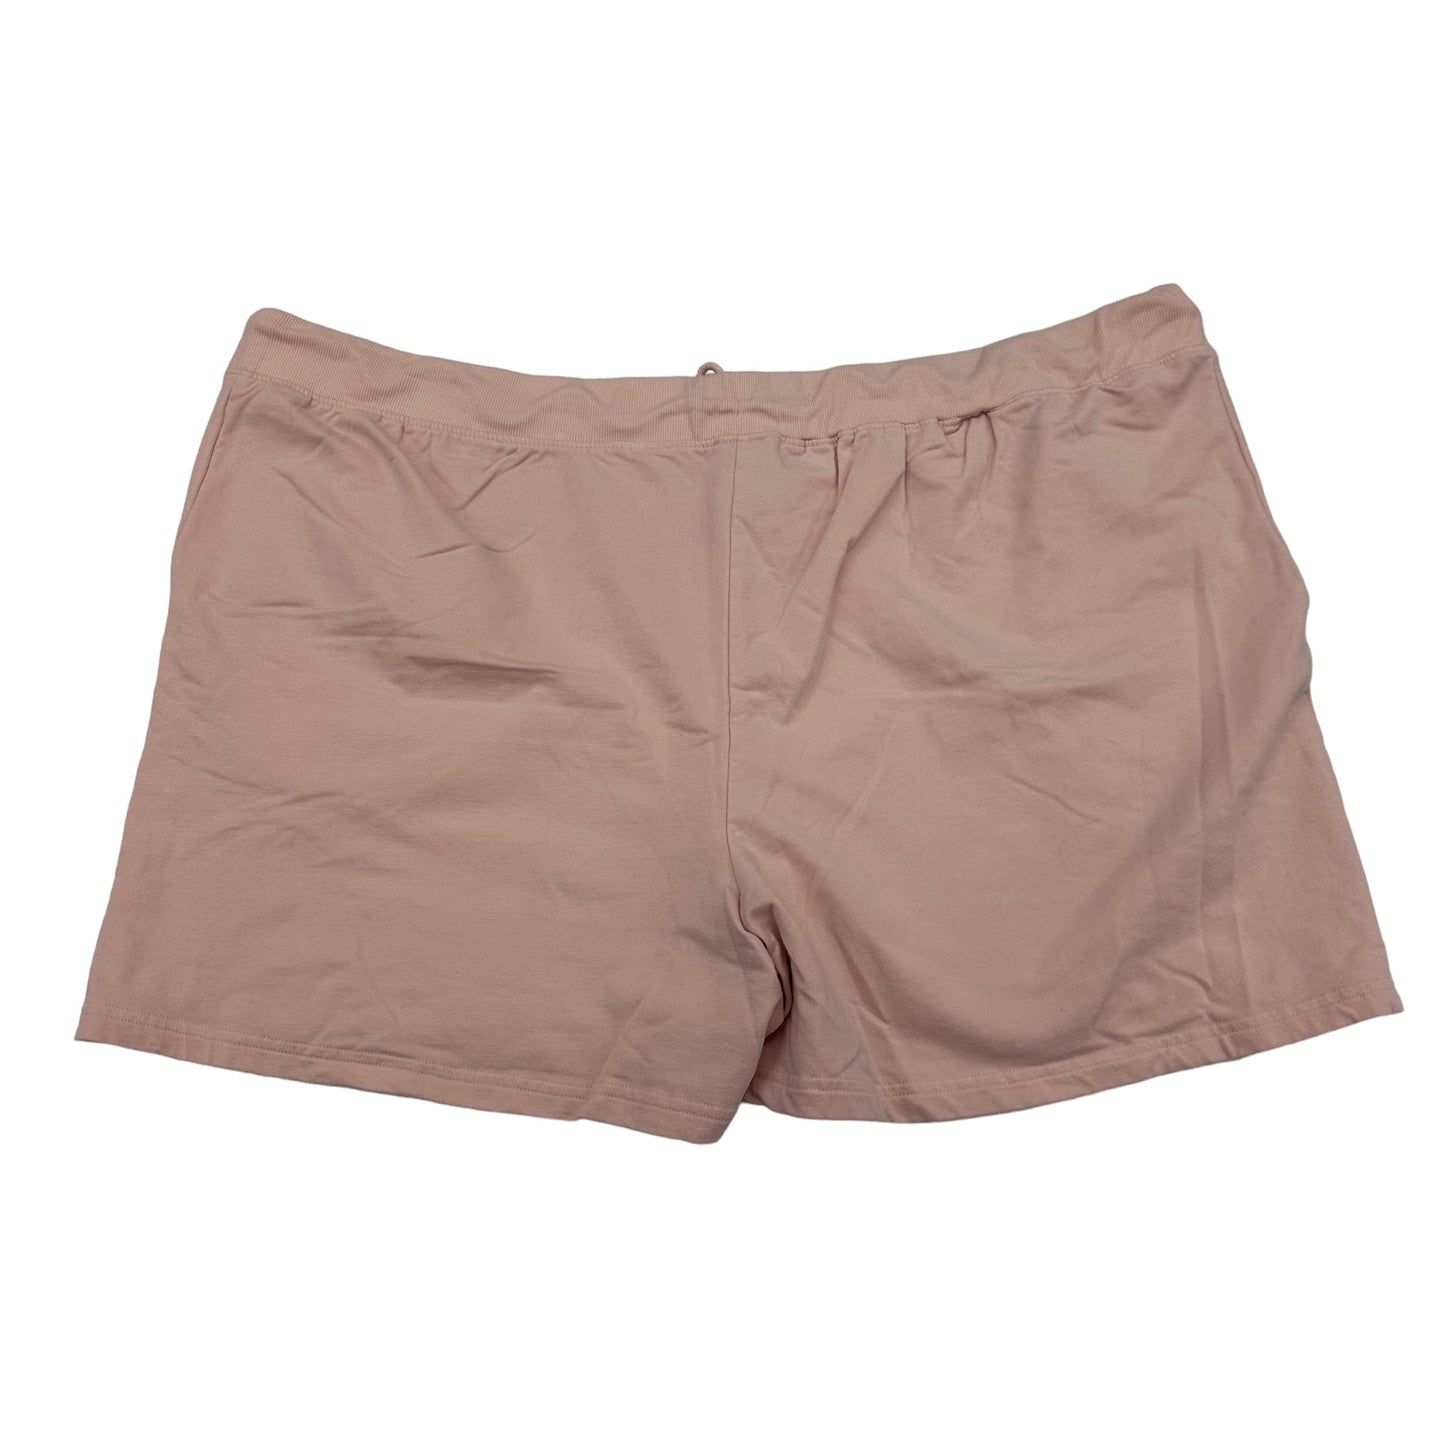 Shorts By Vera Bradley  Size: 3x